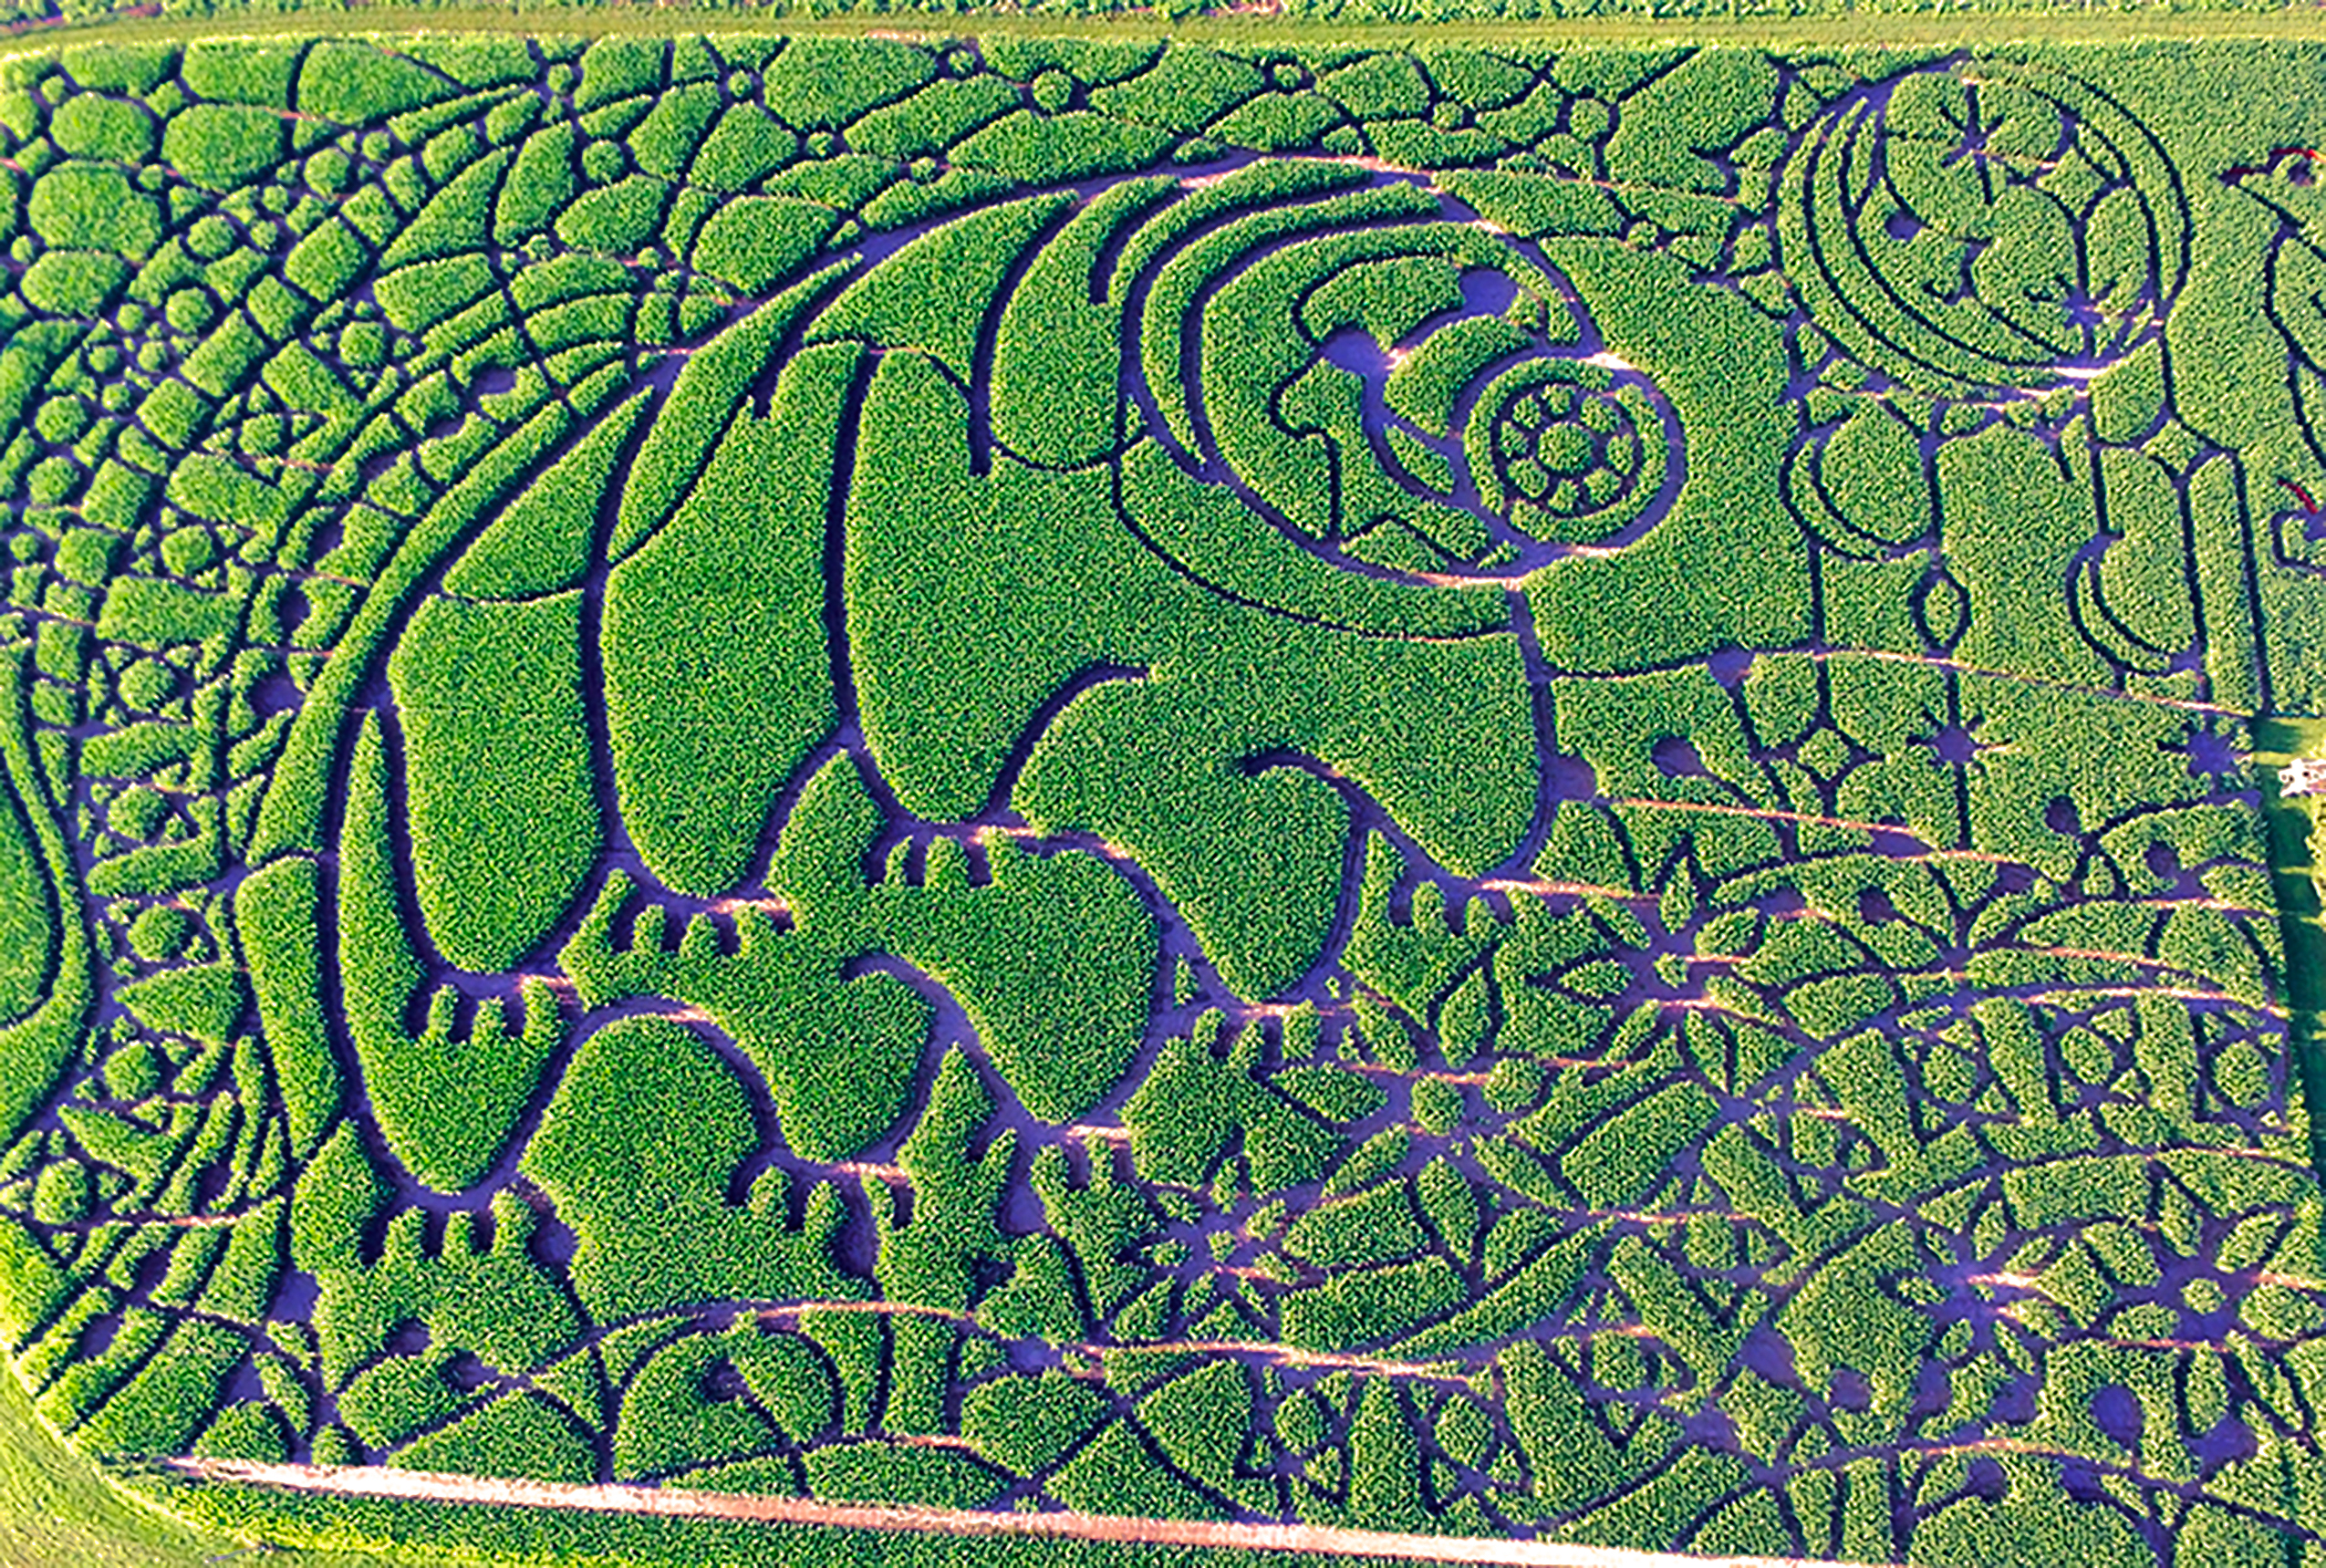 Tardigrade corn maze on Treinen Farm